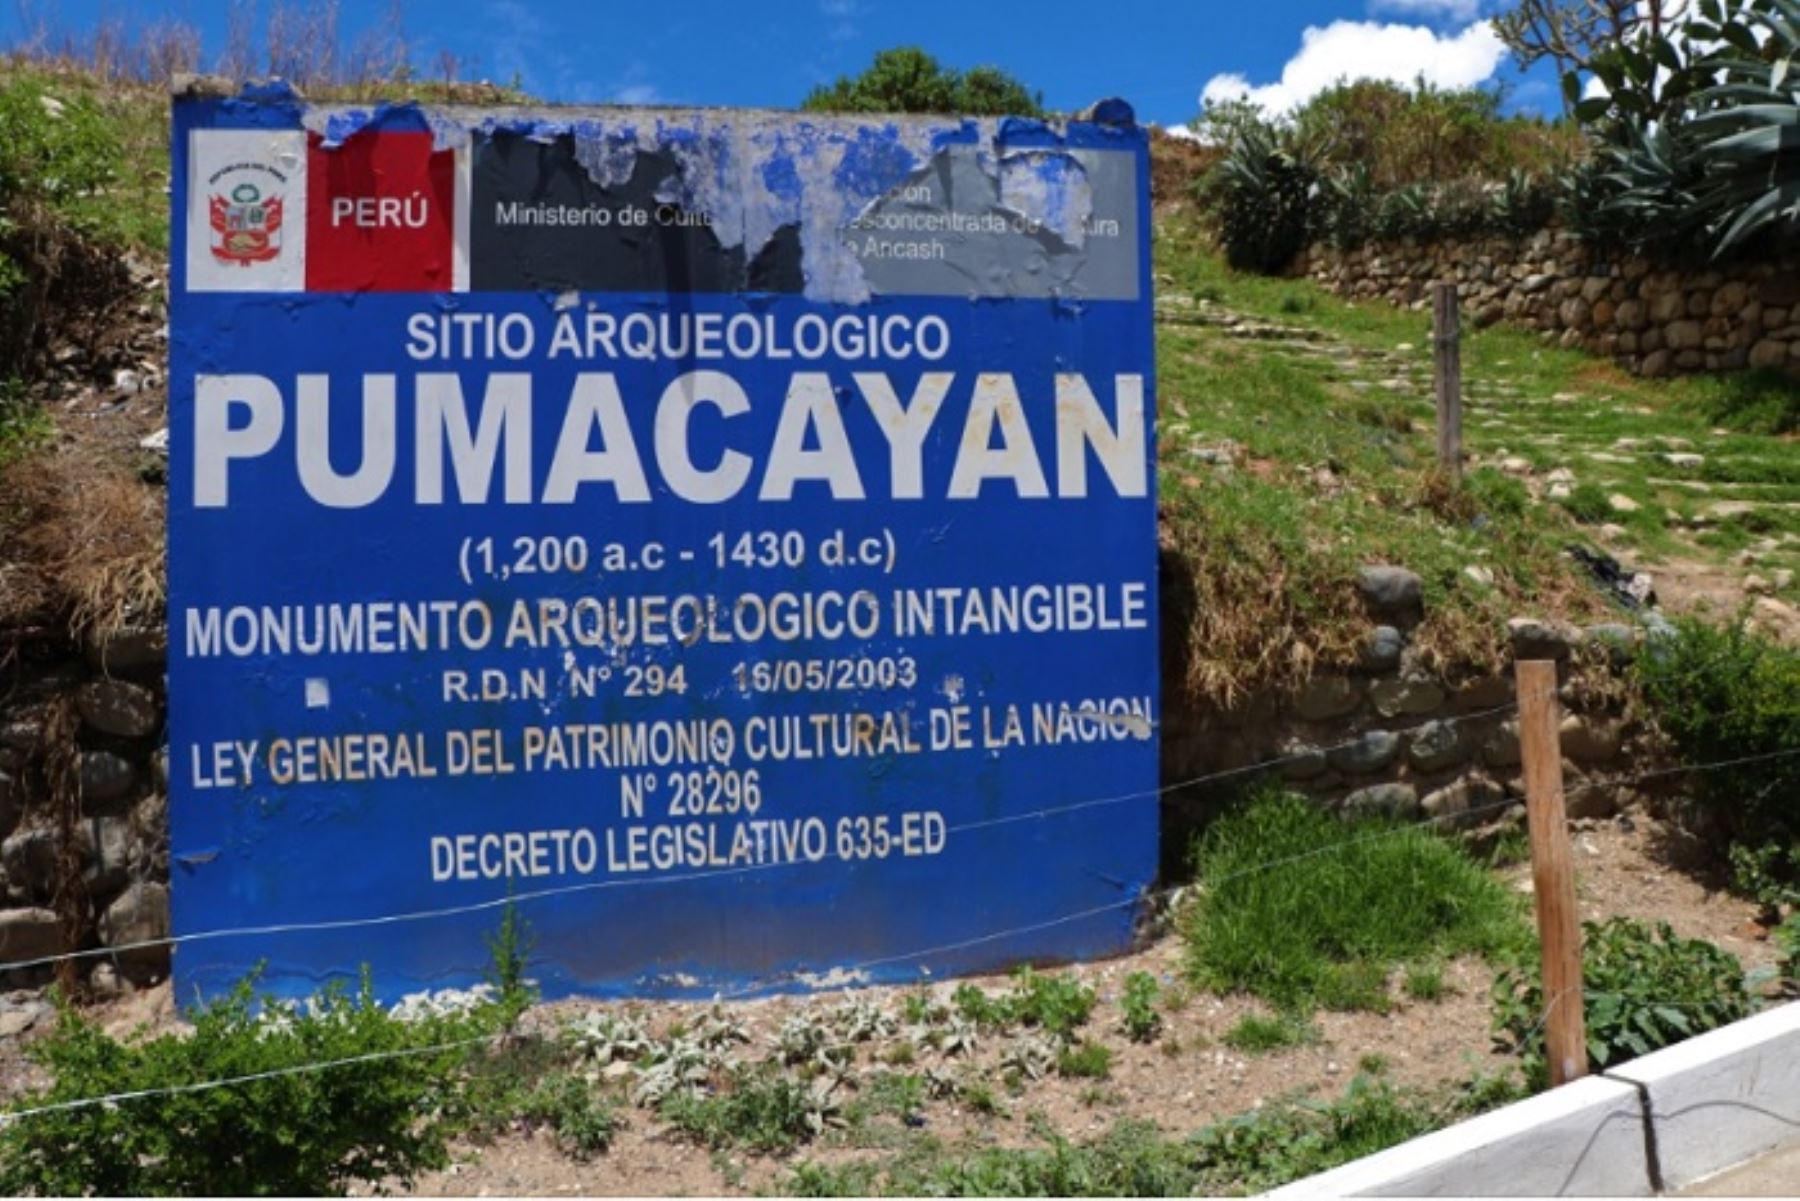 El proyecto es financiado por la Municipalidad Provincial de Huaraz, bajo la modalidad de administración directa, en un plazo de 45 días calendarios; con el apoyo técnico y monitoreo de la Dirección Desconcentrada de Cultura de Áncash.